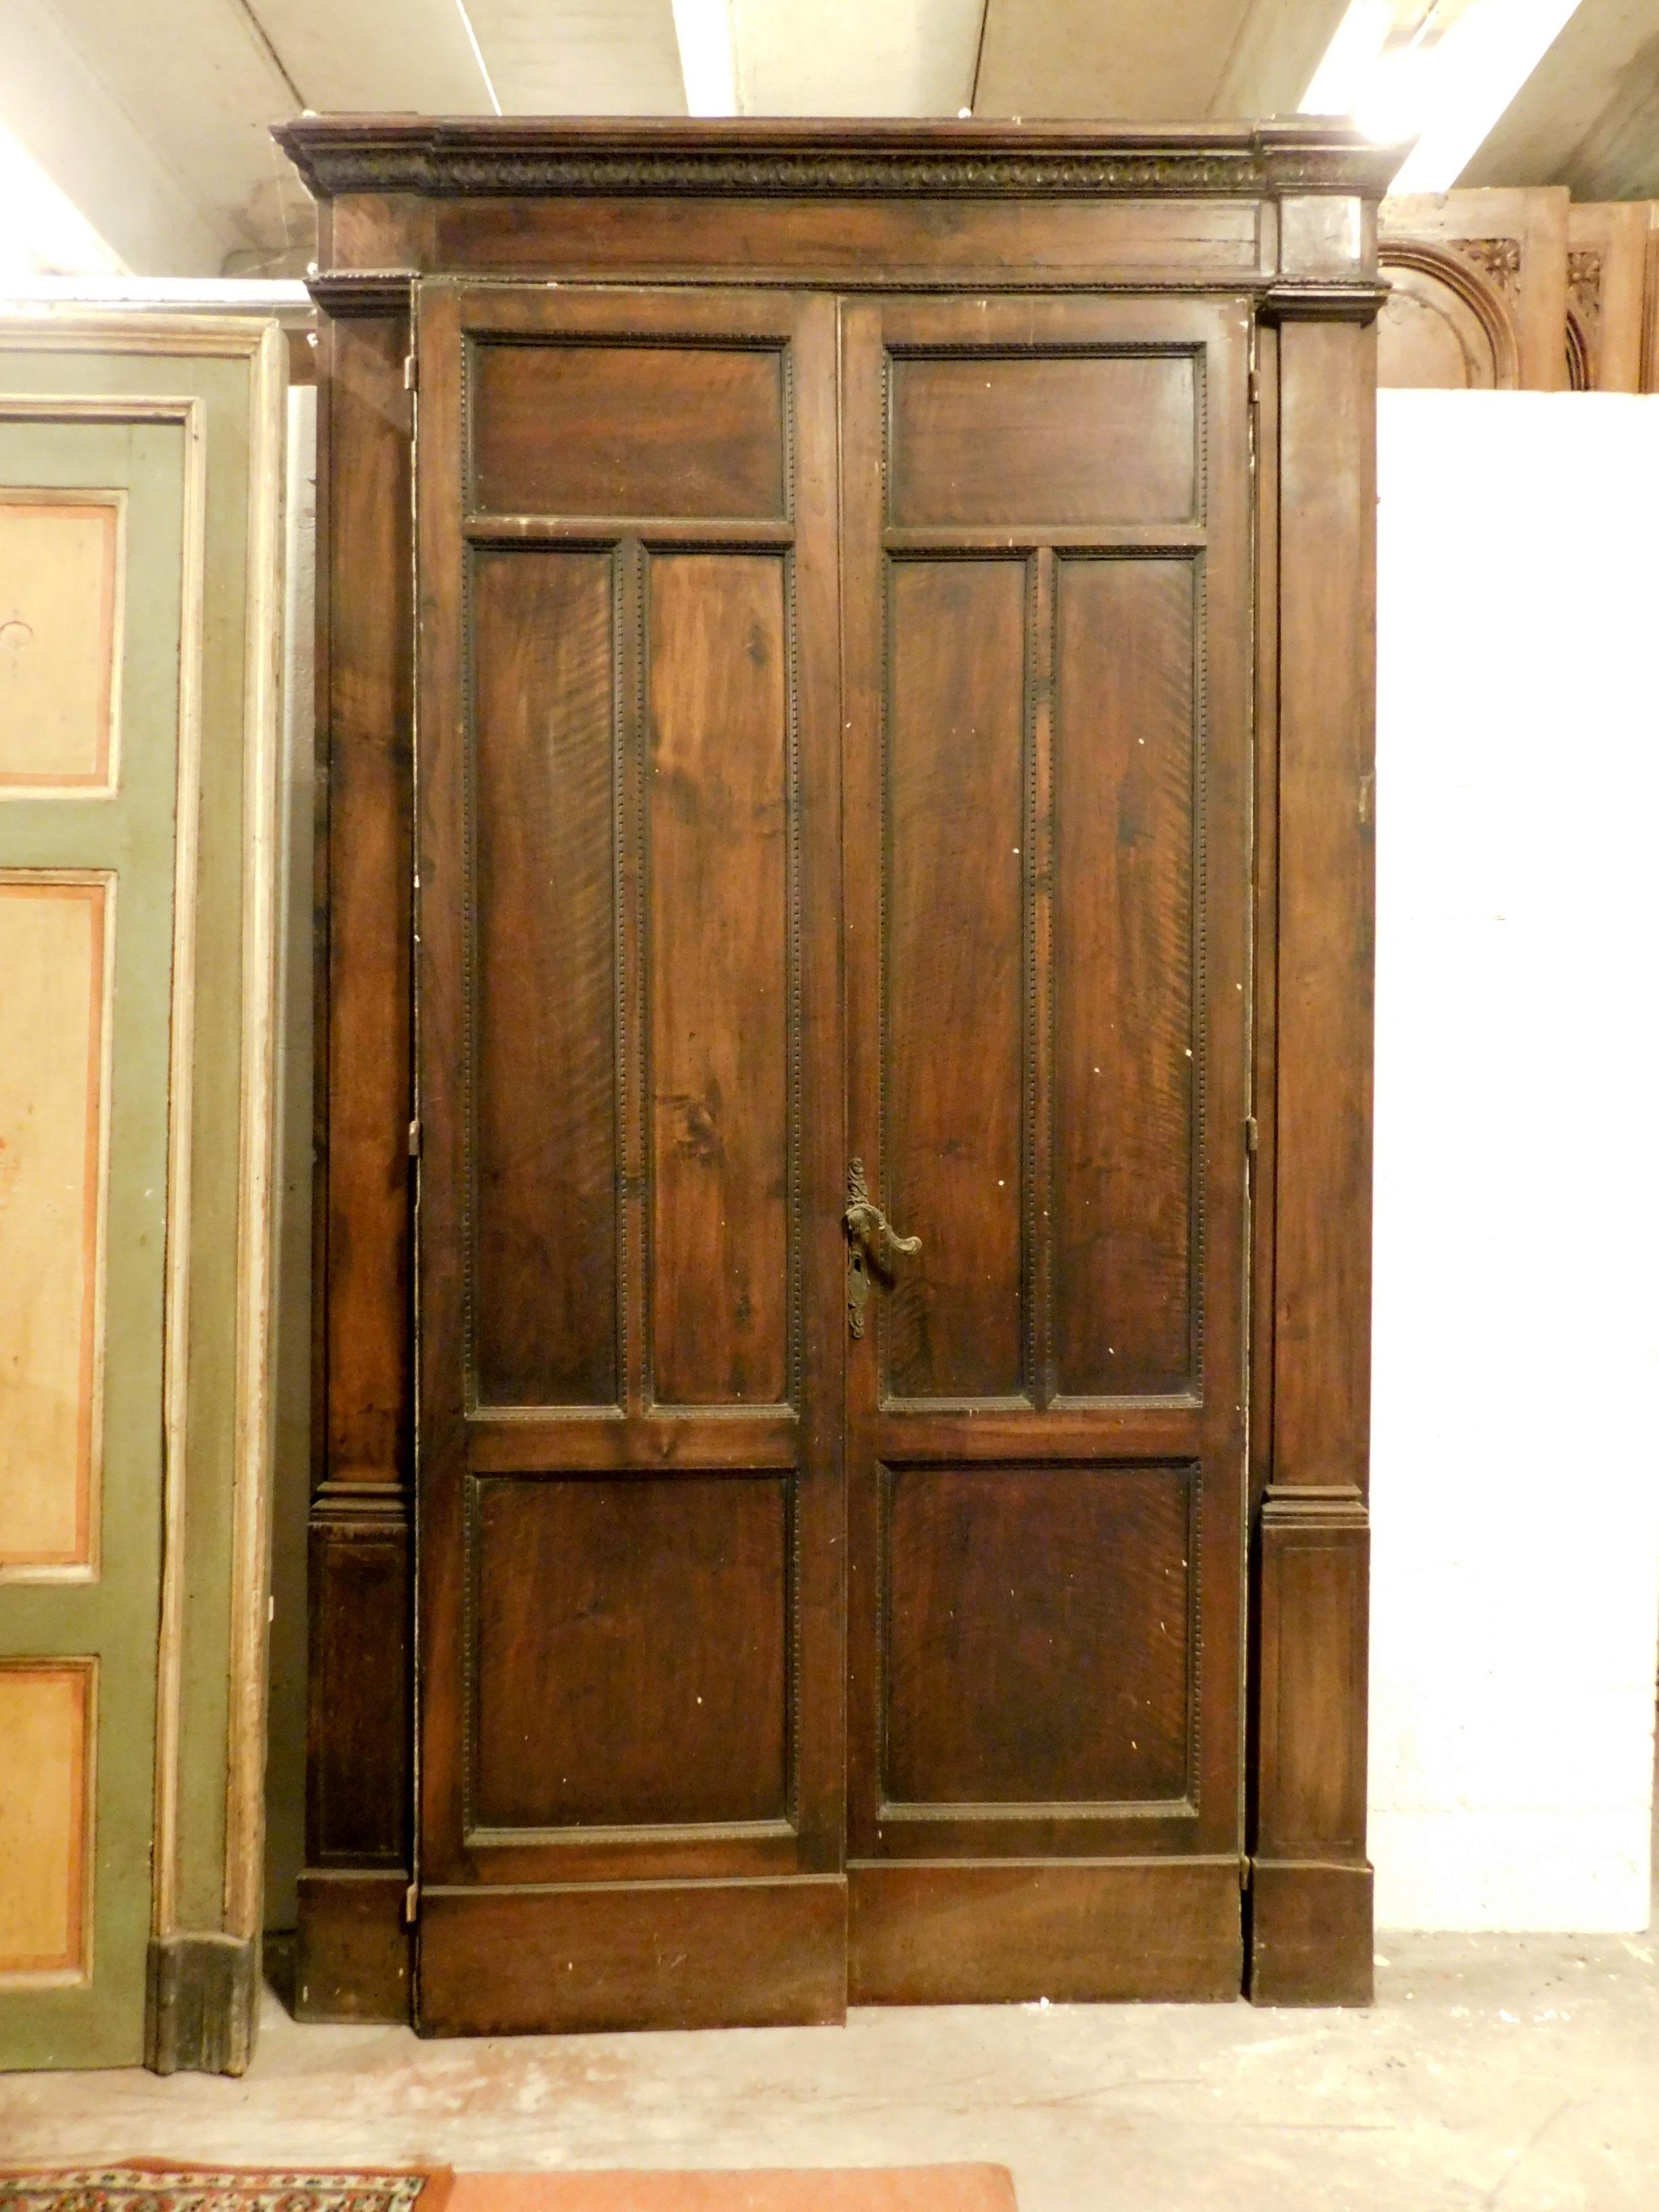 Antike zweiflügelige Tür, geschnitzt in Nussbaum und komplett mit Rahmen, handgefertigt im ersten Viertel des 20. Jahrhunderts, aus Turin (Italien), maximale Größe 158 x 273 cm, Türbreite 123 x 249 cm.
Schön und imposant, trennte es einen Raum von